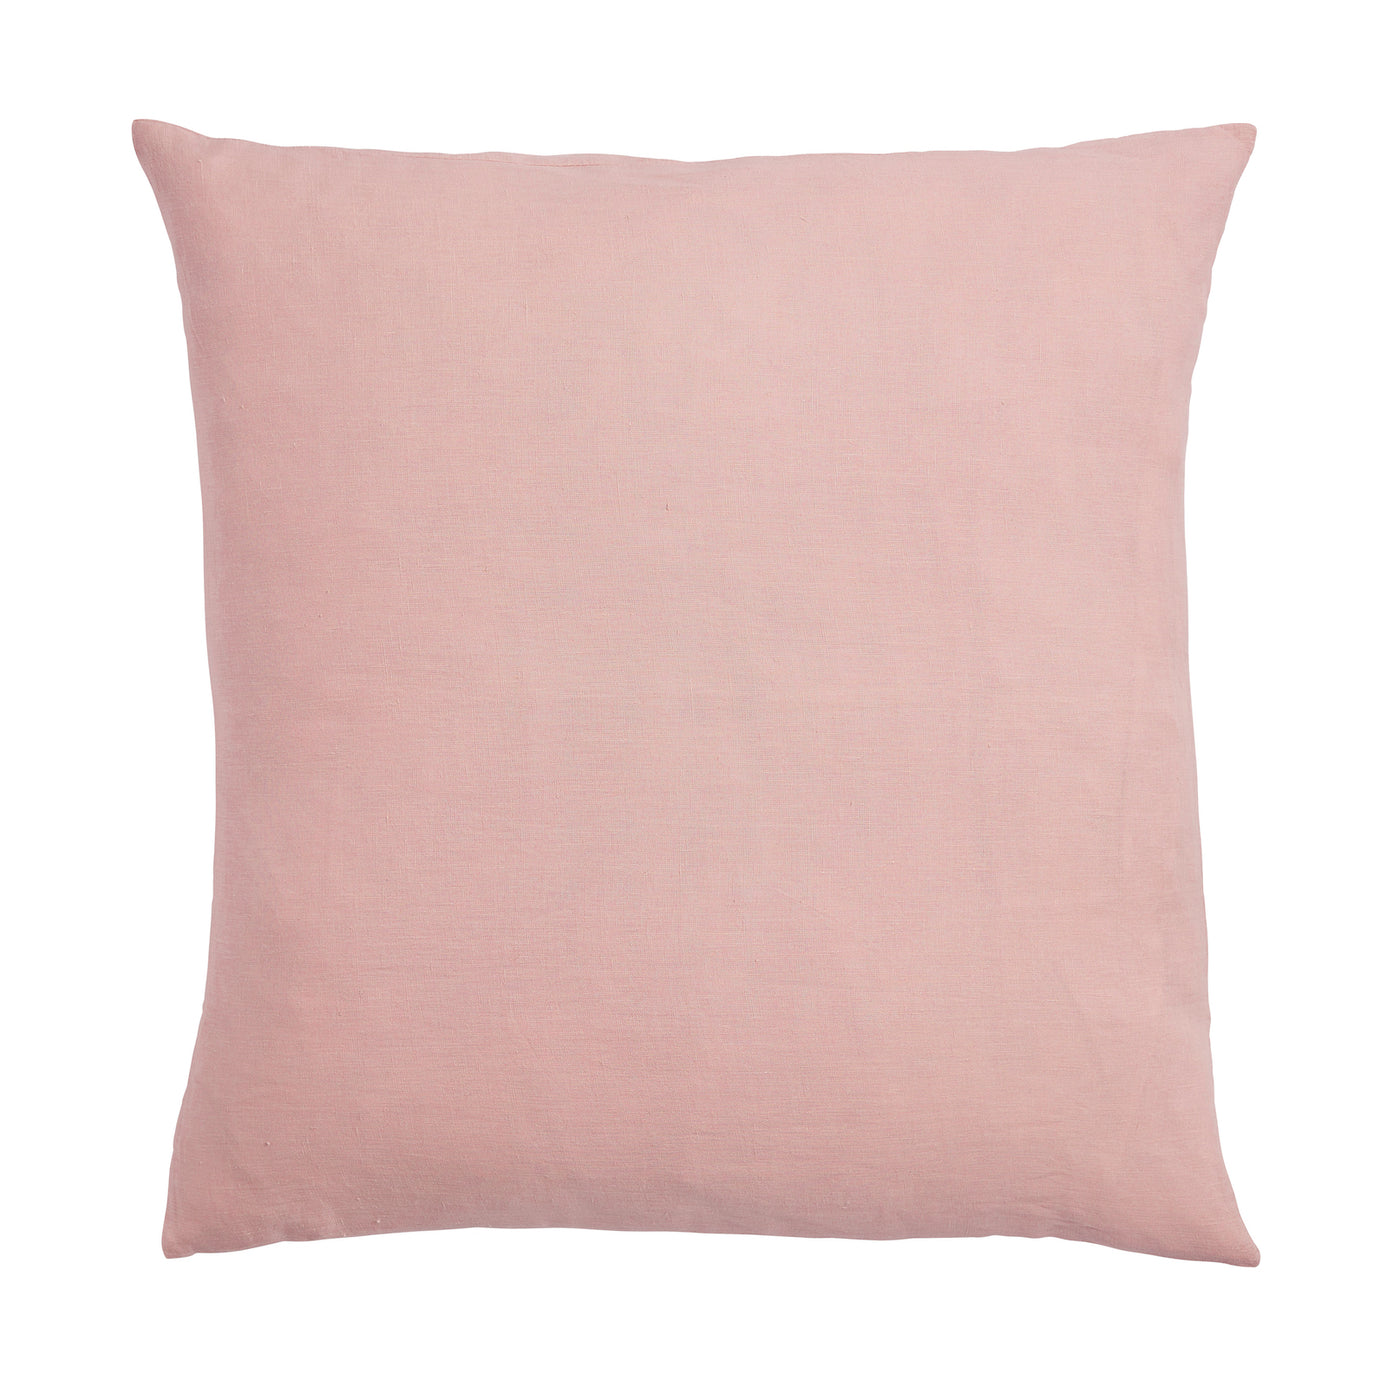 Dusk French Flax Linen Euro Pillowcase Set